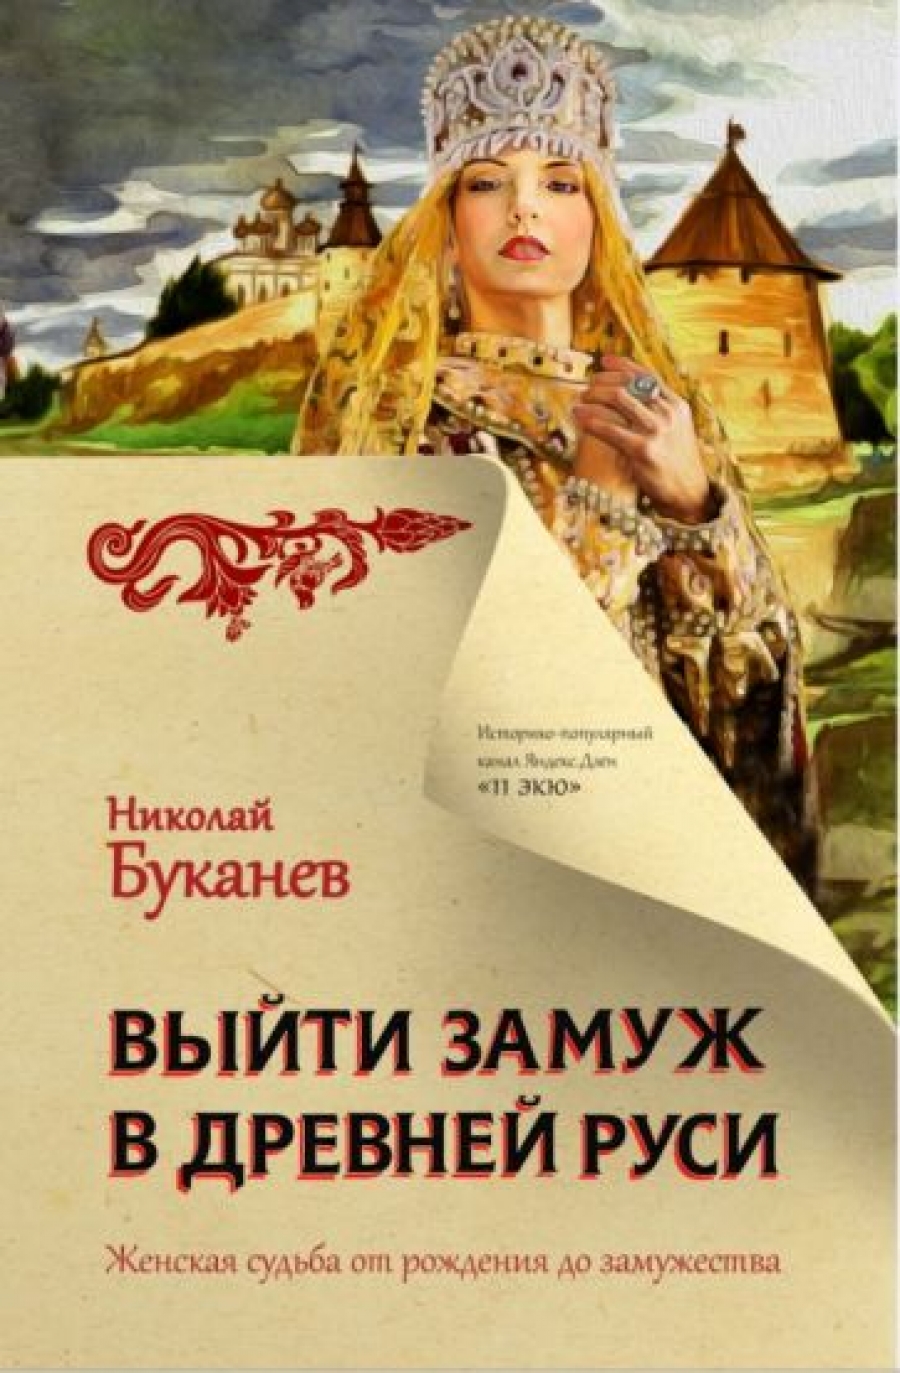 Буканев Н.Н. Выйти замуж в Древней Руси 